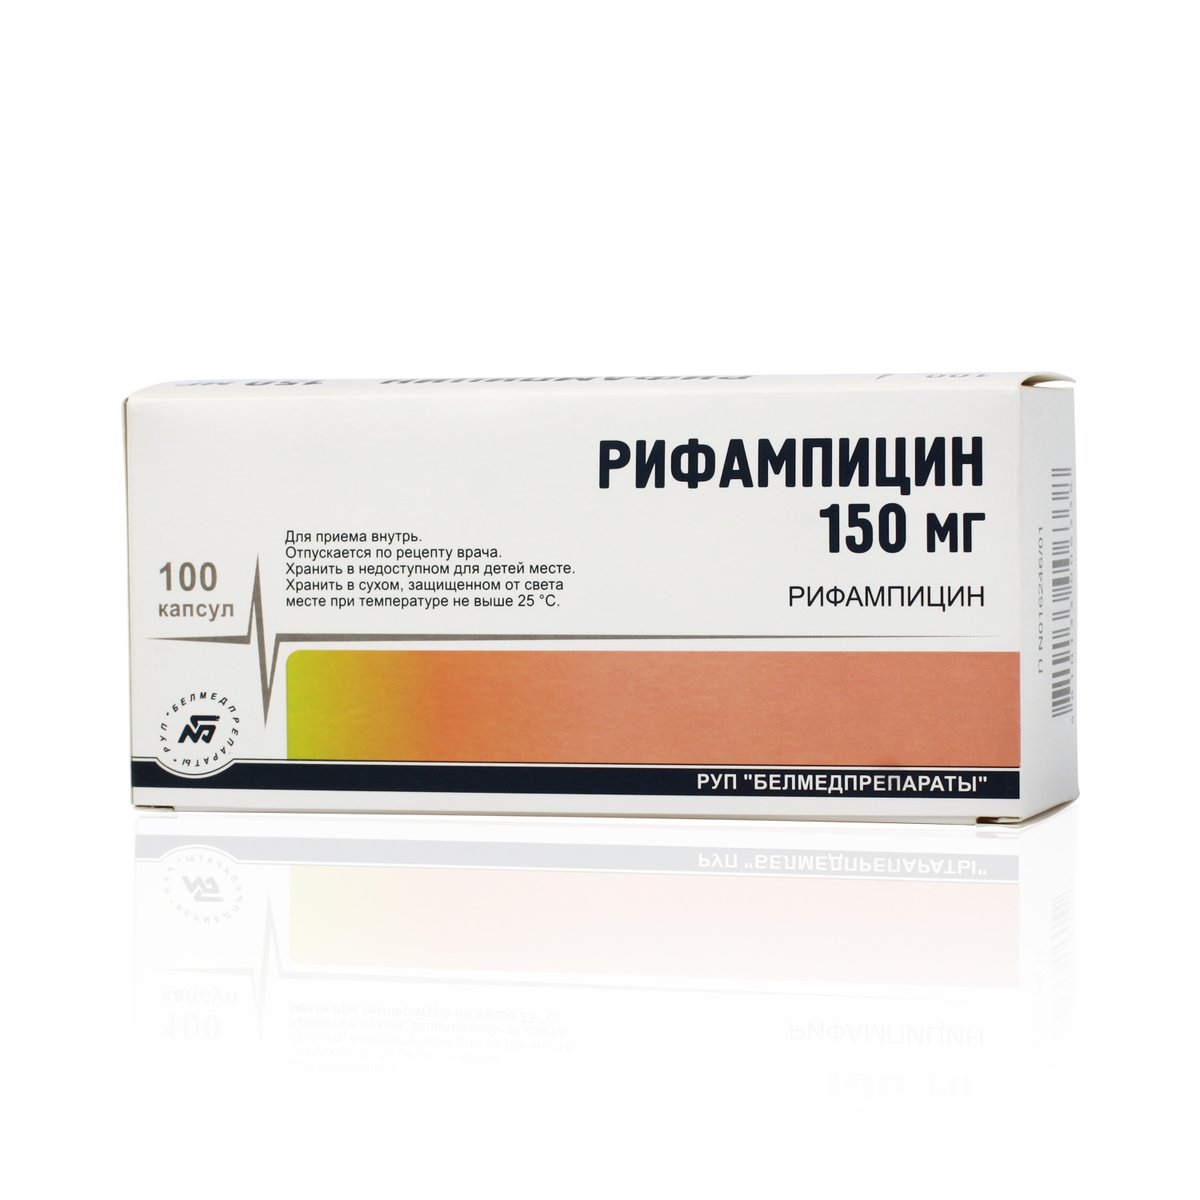 Рифампицин (капсулы, 100 шт, 150 мг) - цена,  онлайн  .